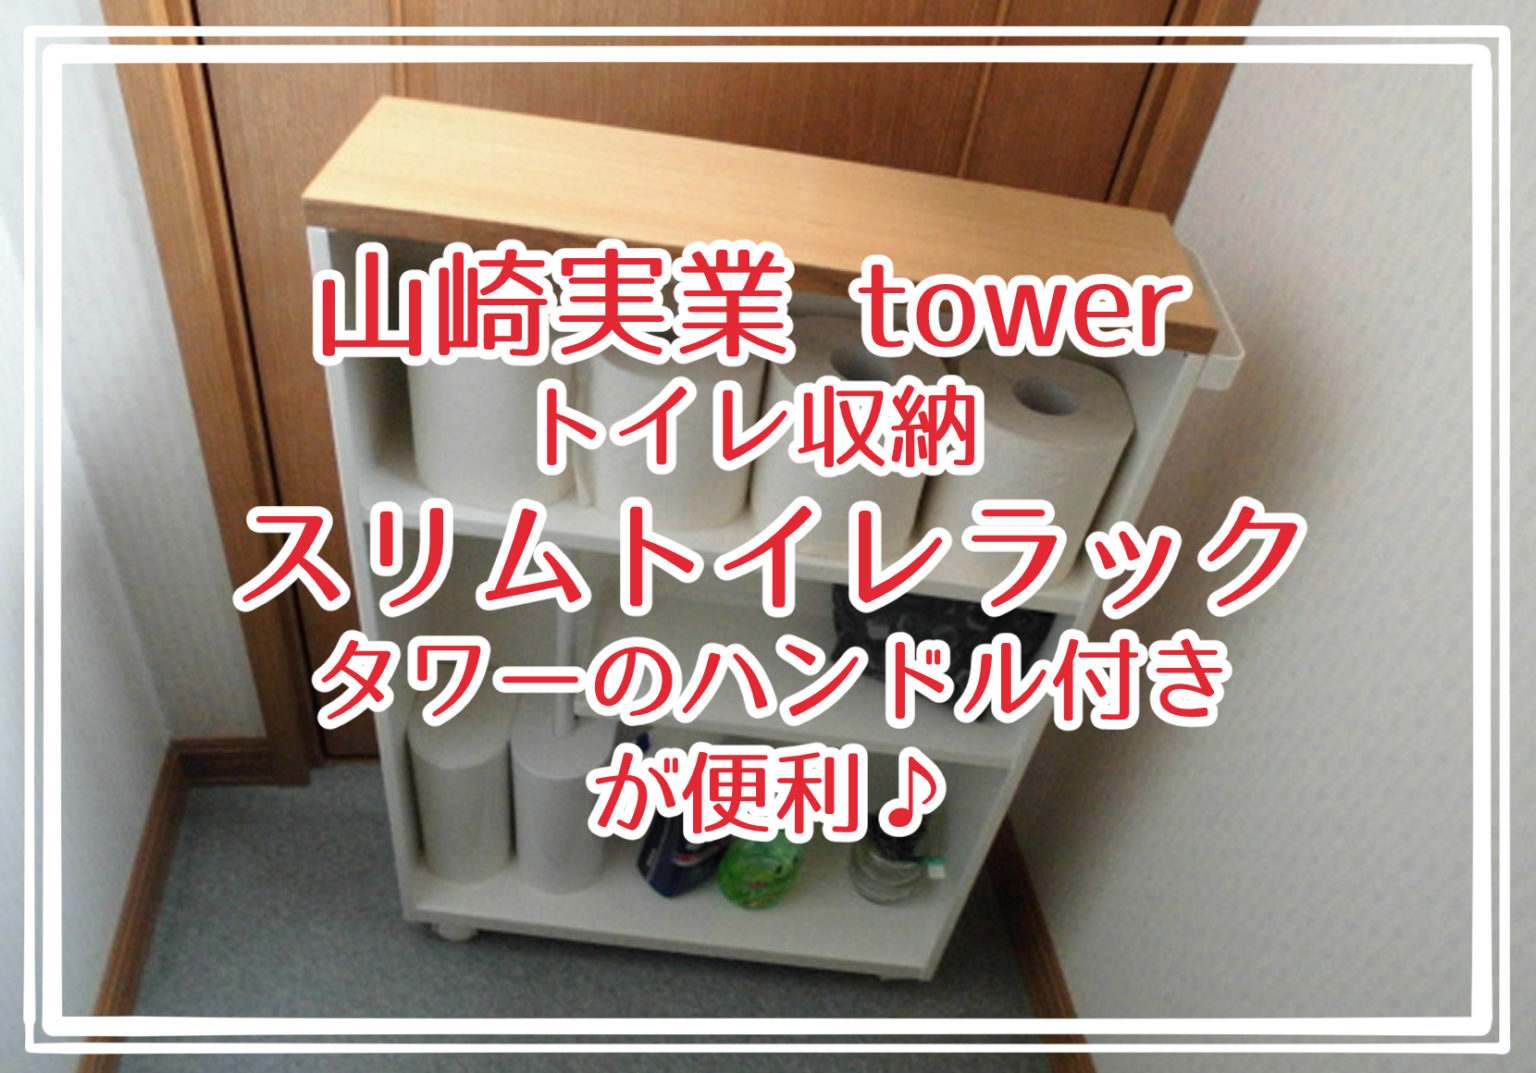 山崎実業 tower トイレ収納 スリムトイレラックタワーのハンドル付きが便利♪